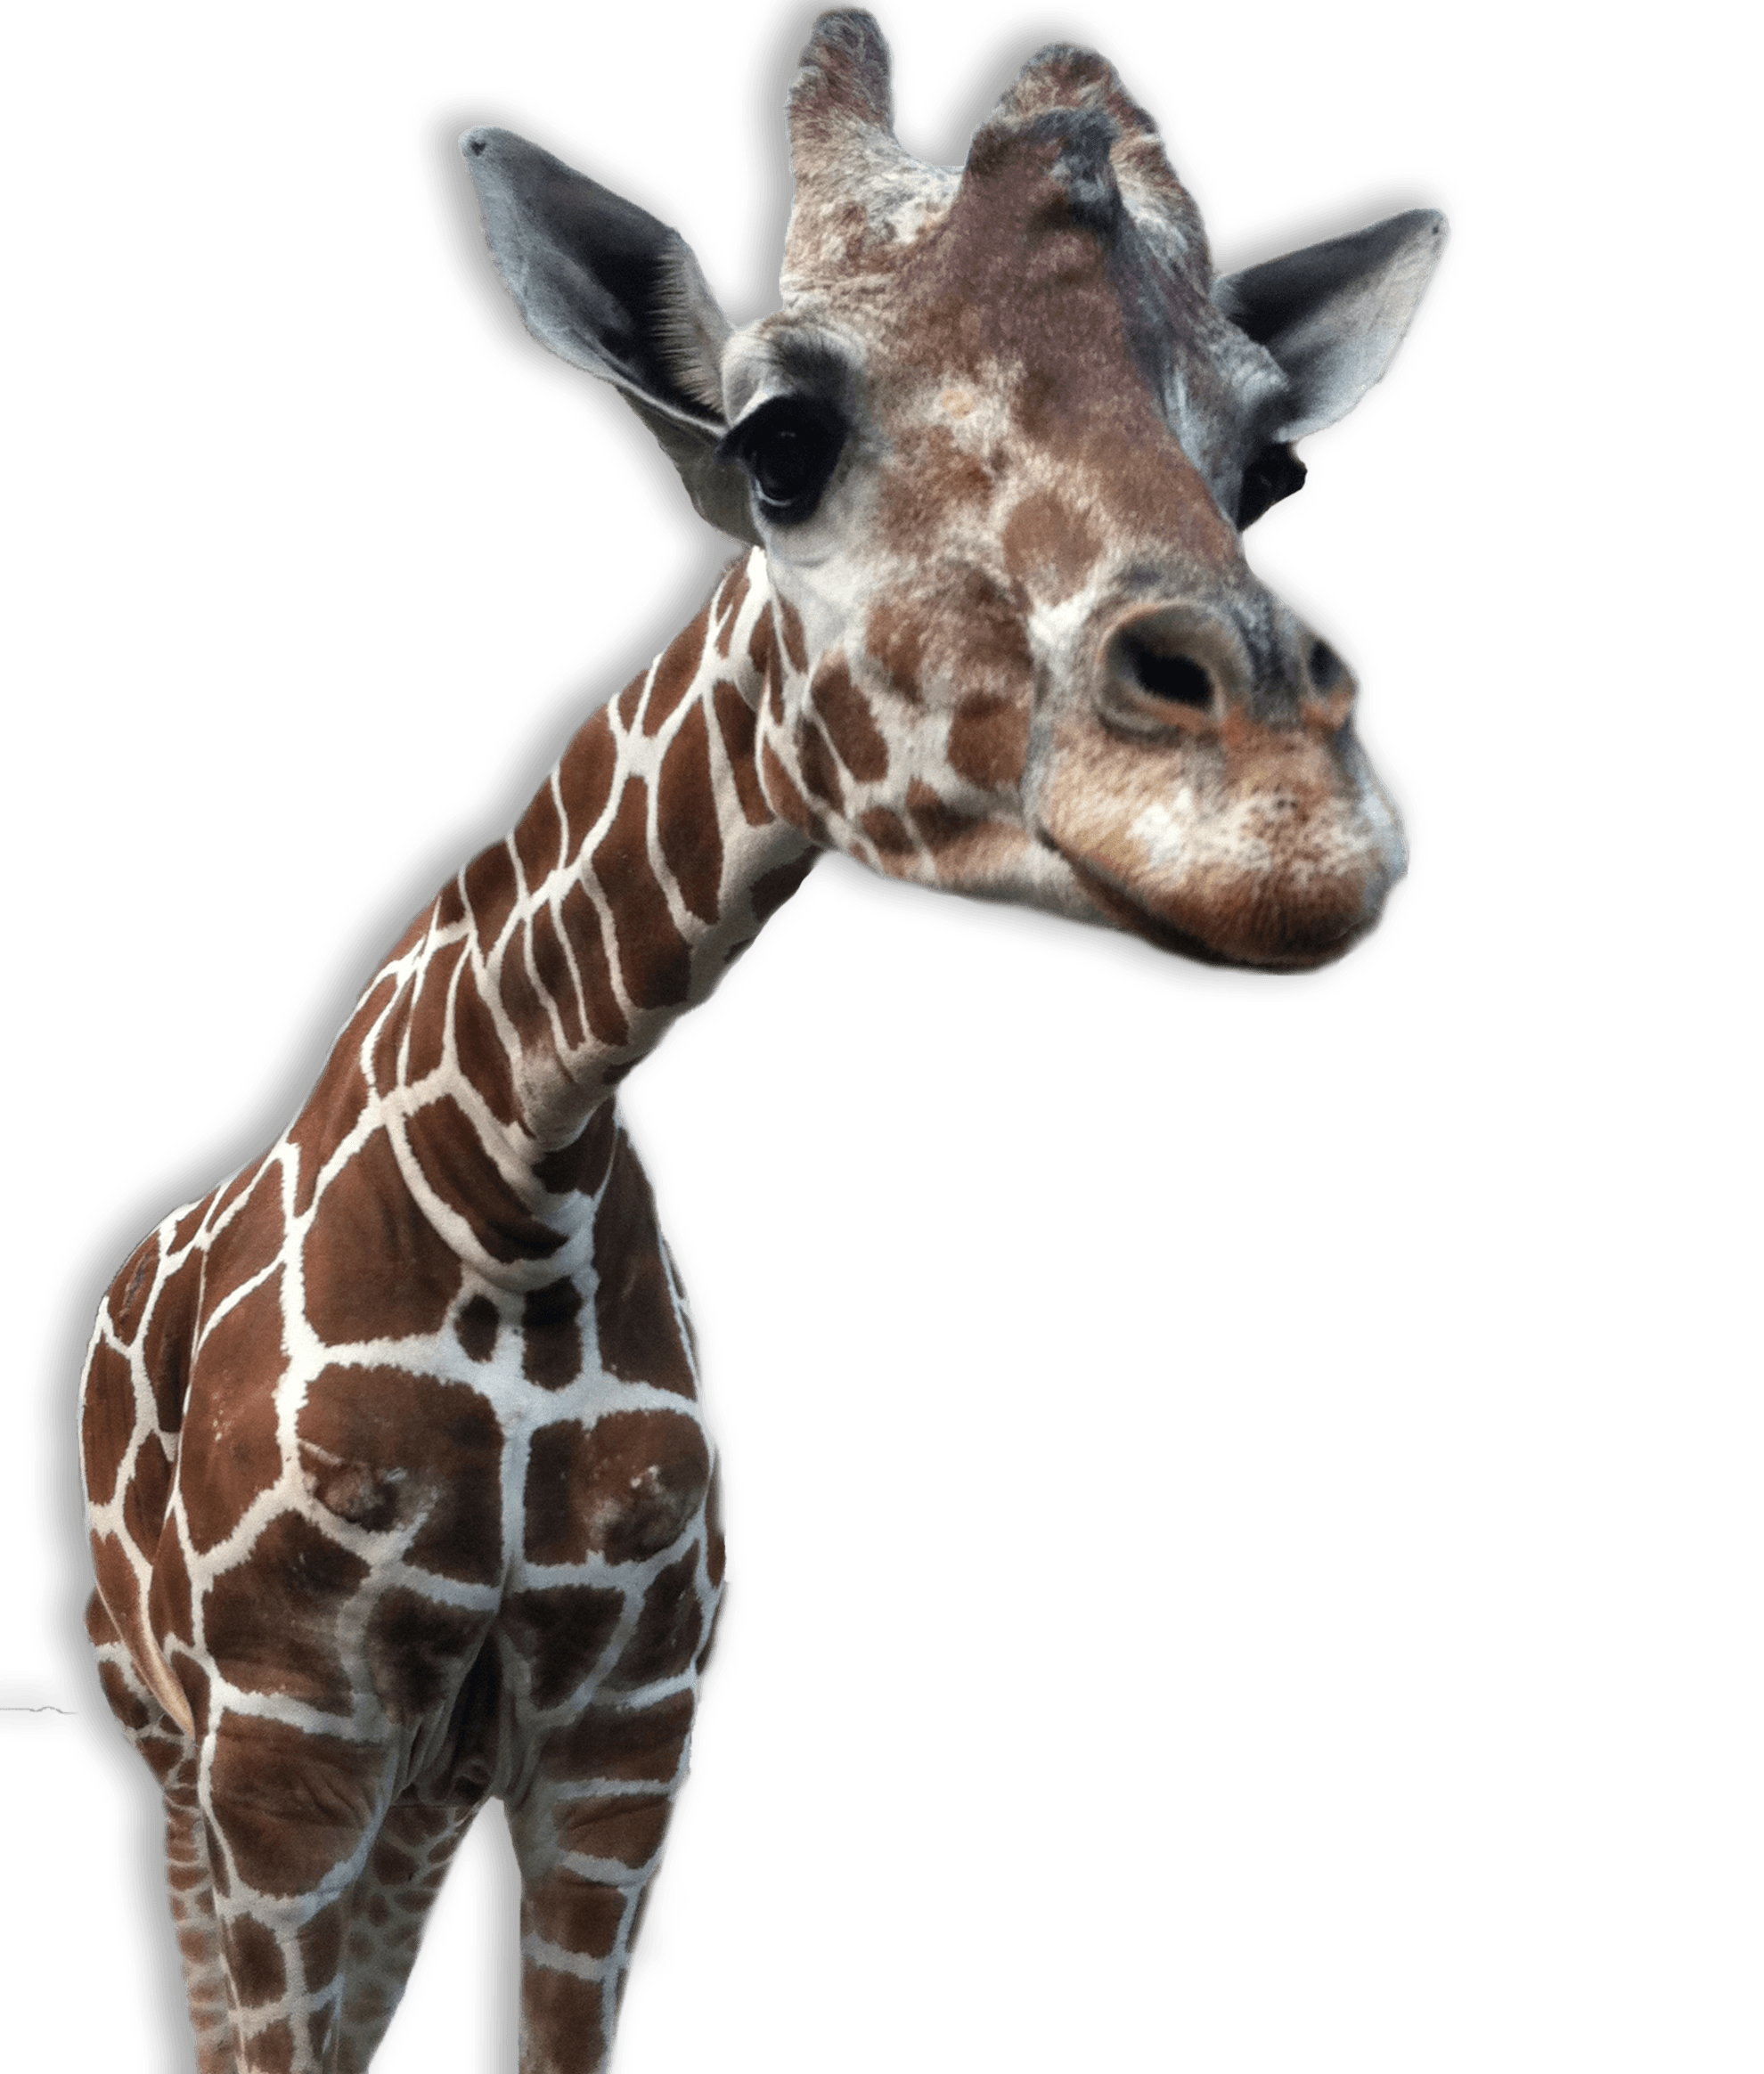 Giraffe Close Up - Giraffe Head, Transparent background PNG HD thumbnail